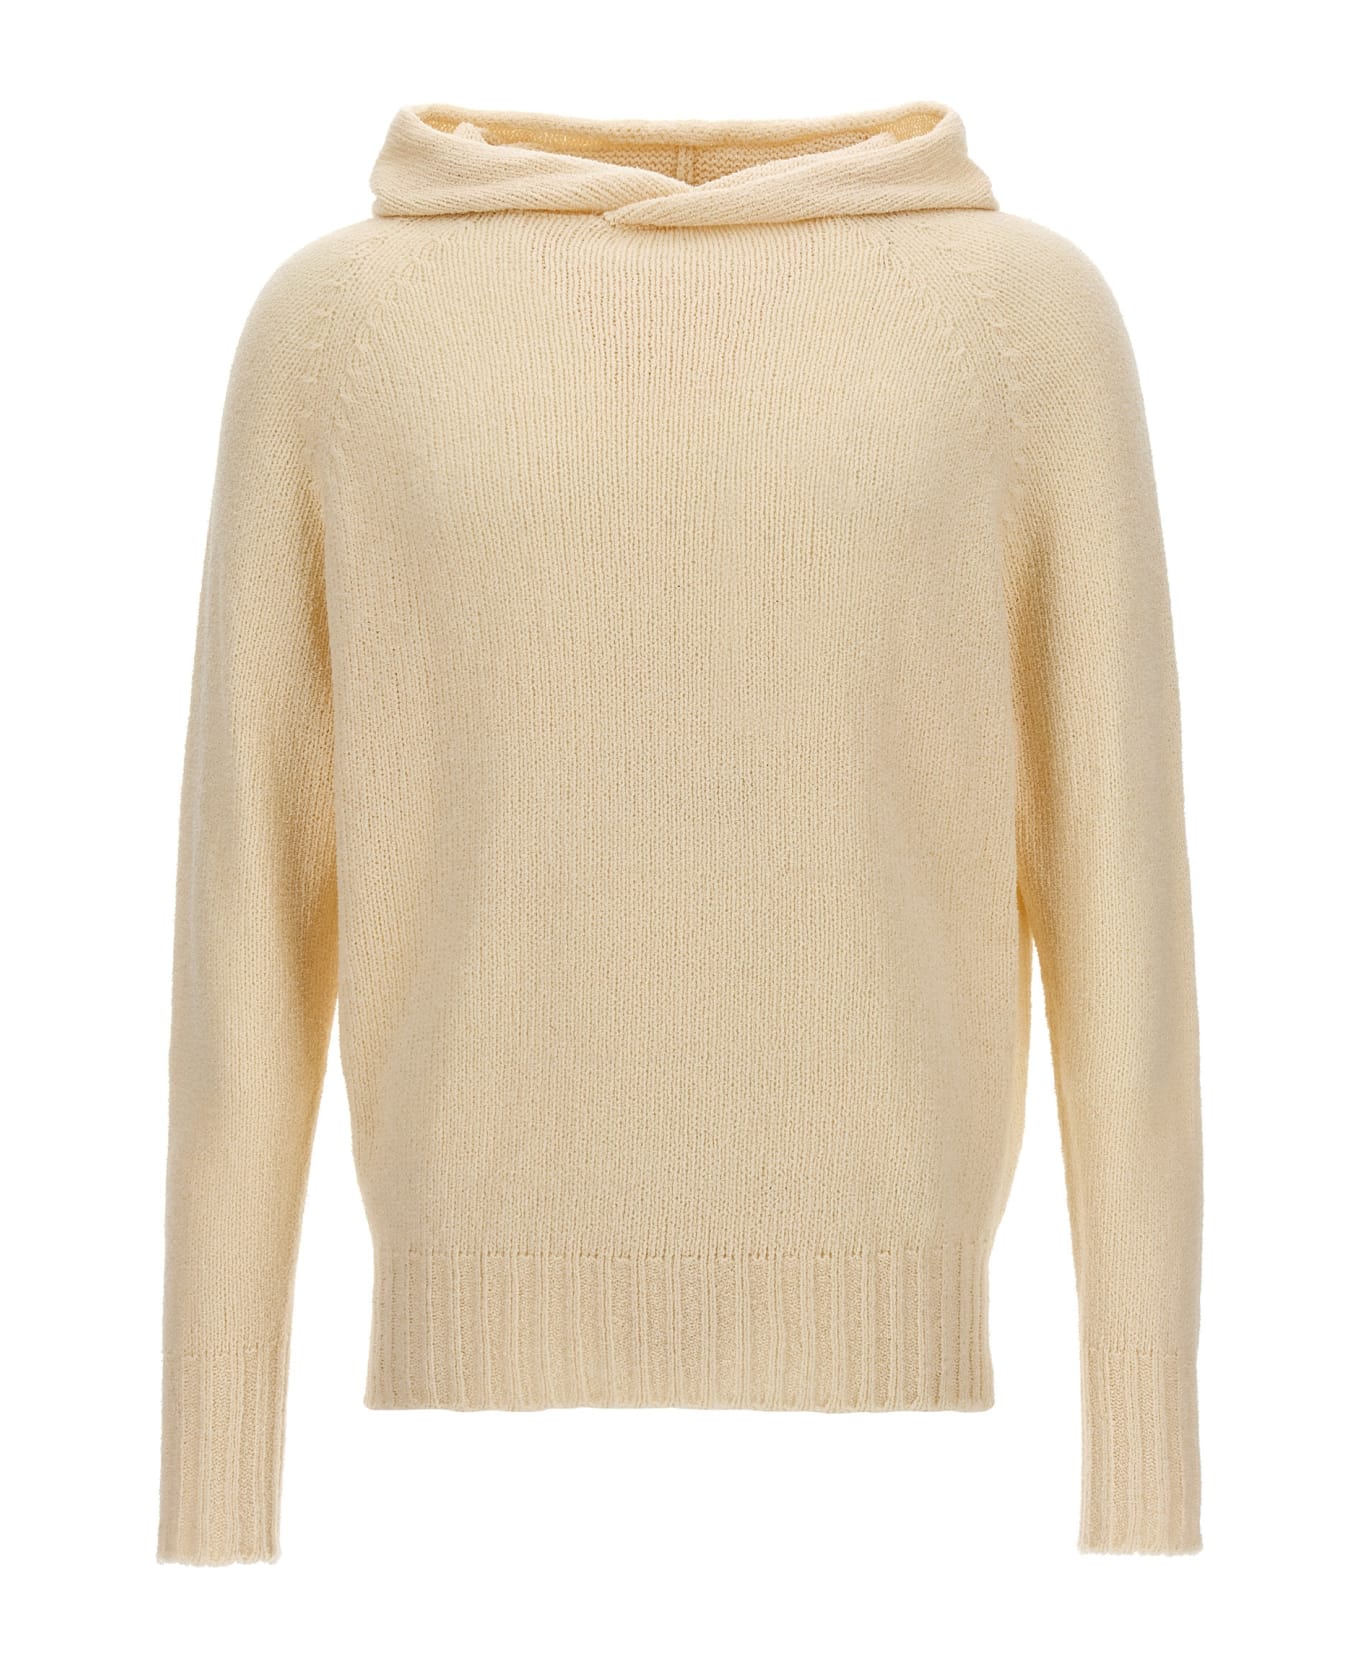 Ma'ry'ya Hooded Sweater - White